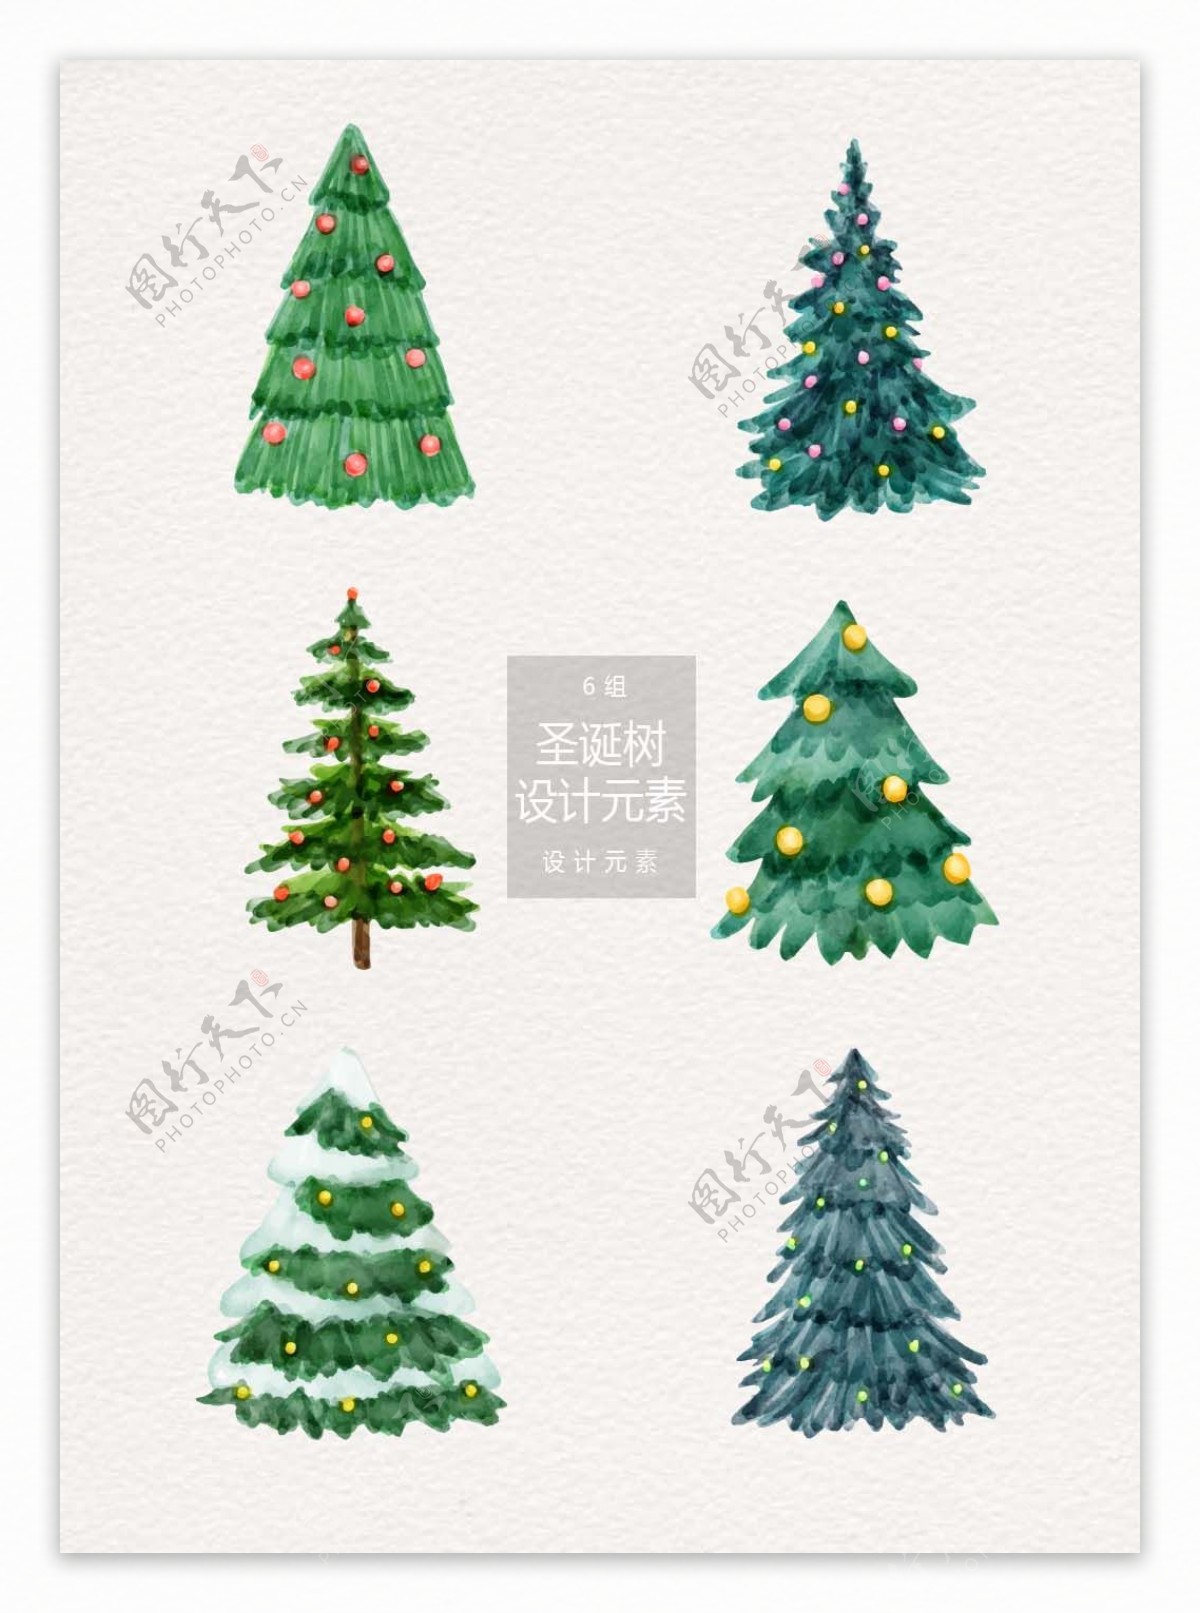 水彩手绘圣诞树设计元素